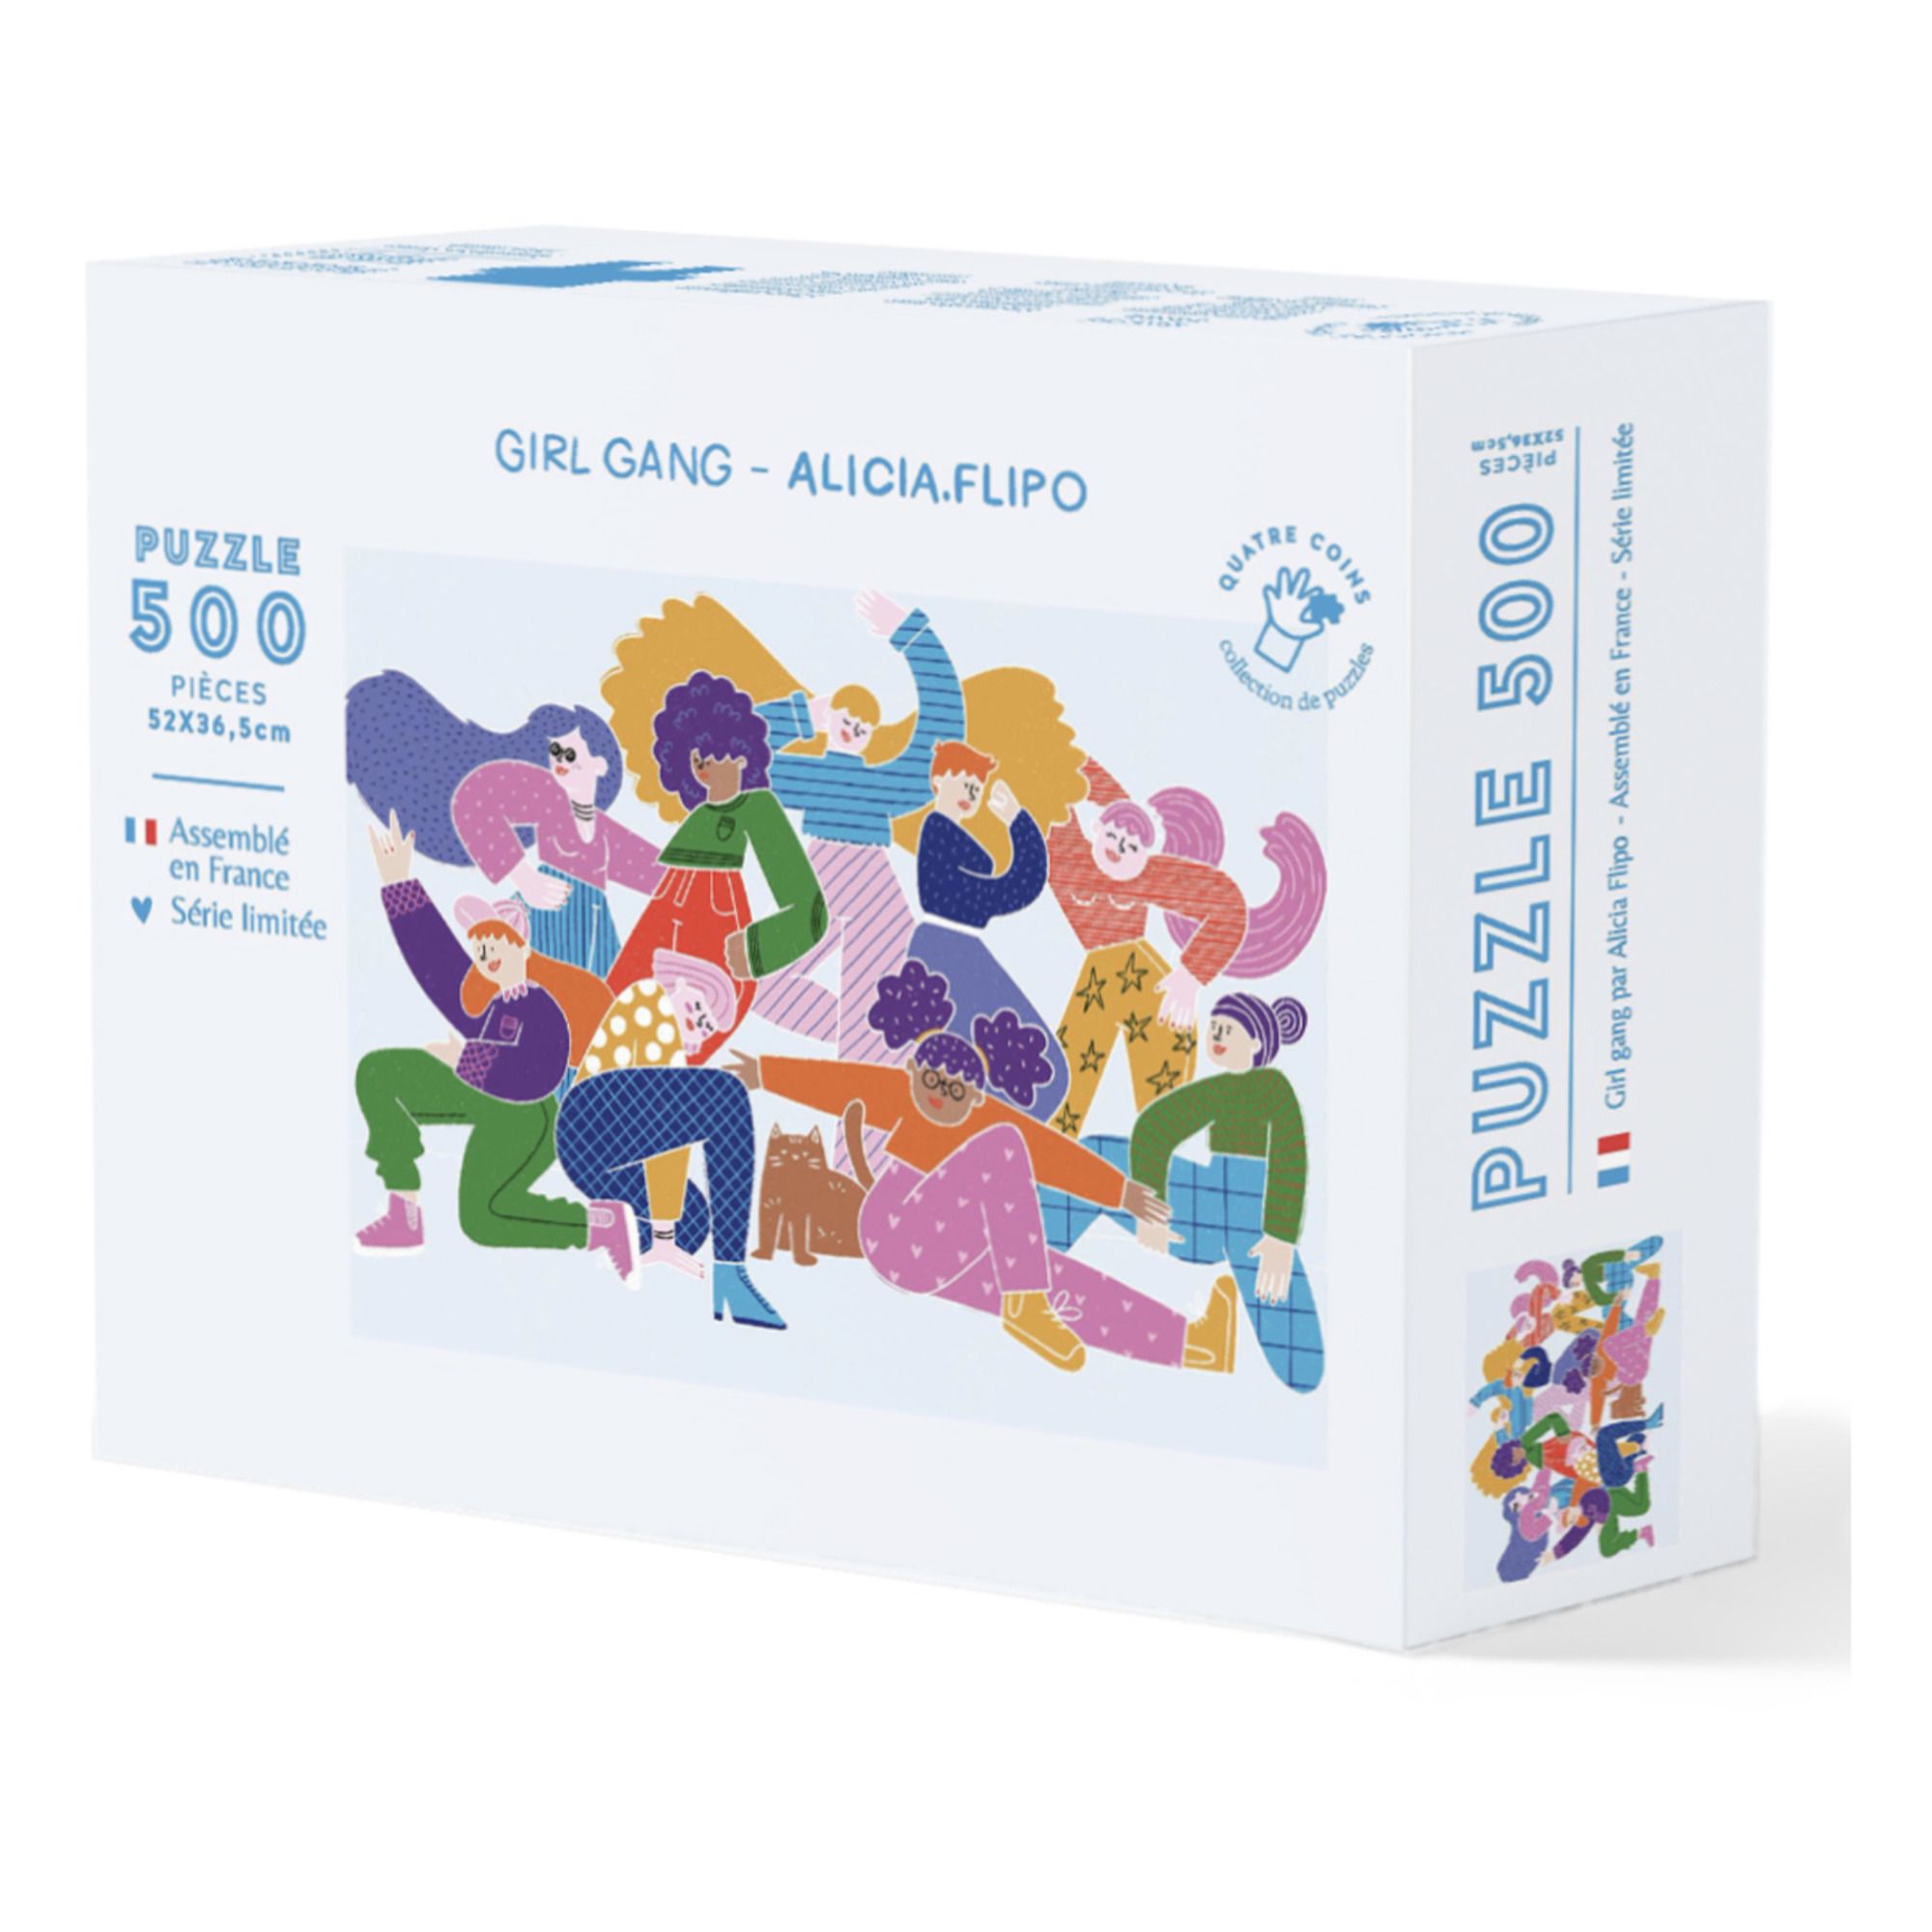 La Petite Epicerie - Puzzle Girl Gang par Alicia Flipo - 500 pièces - Multicolore